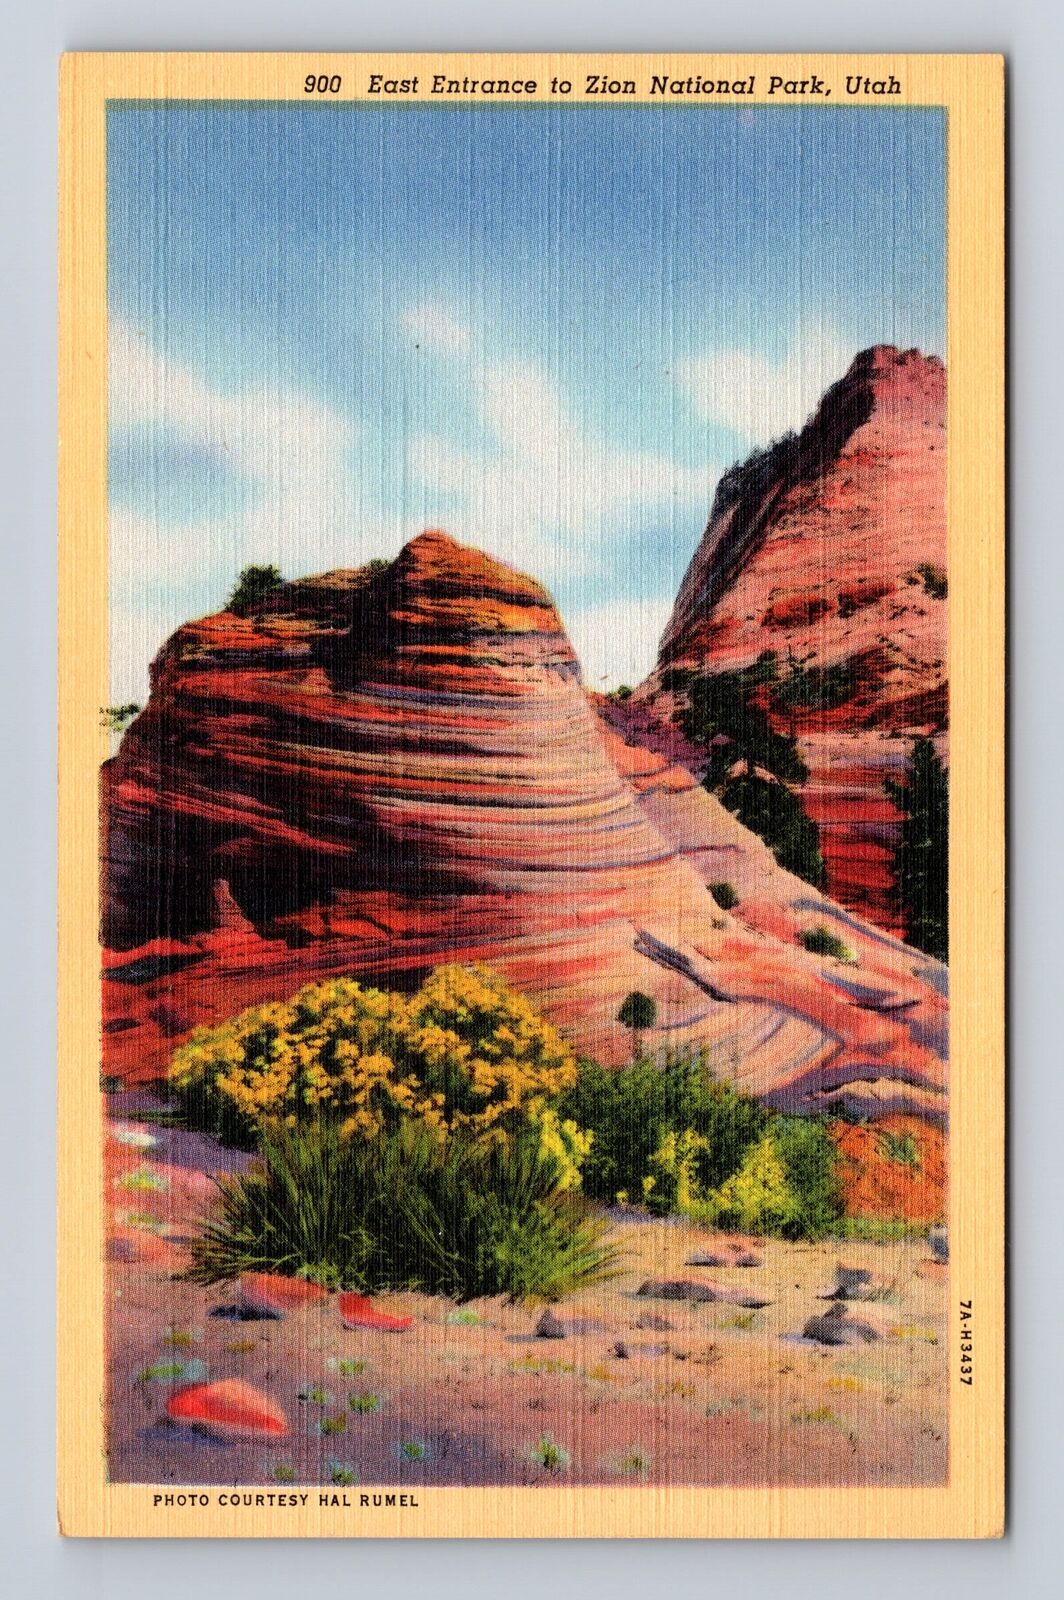 Zion National Park, East Entrance, Series #900, Vintage Souvenir Postcard